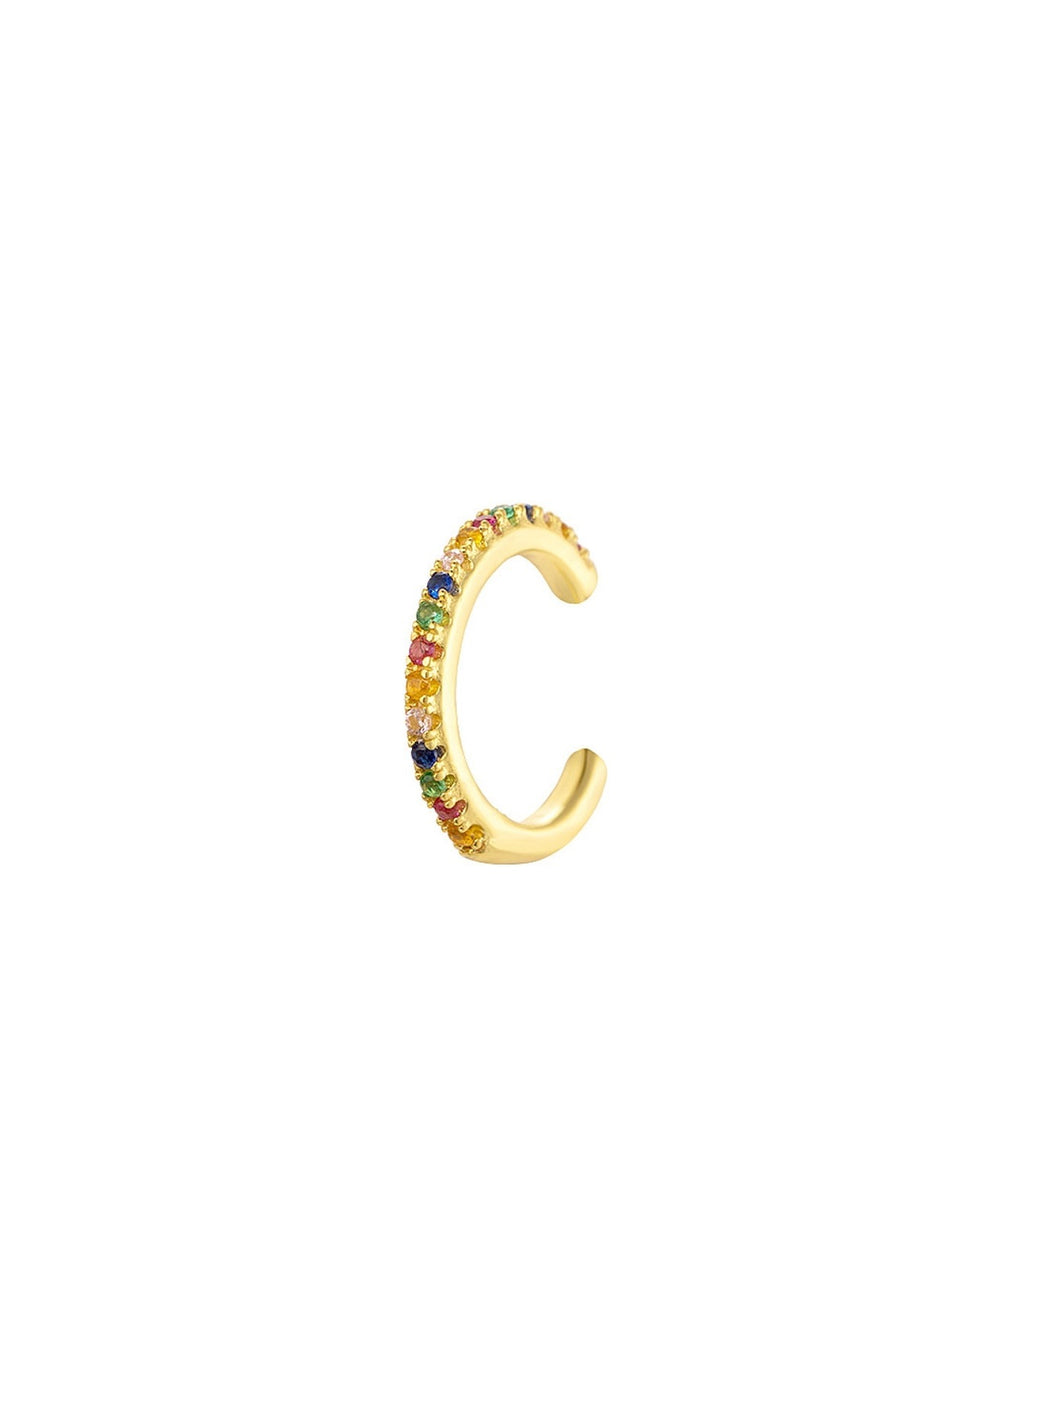 Pendiente ear cuff circonitas colores - Plata 925 Baño oro 18K